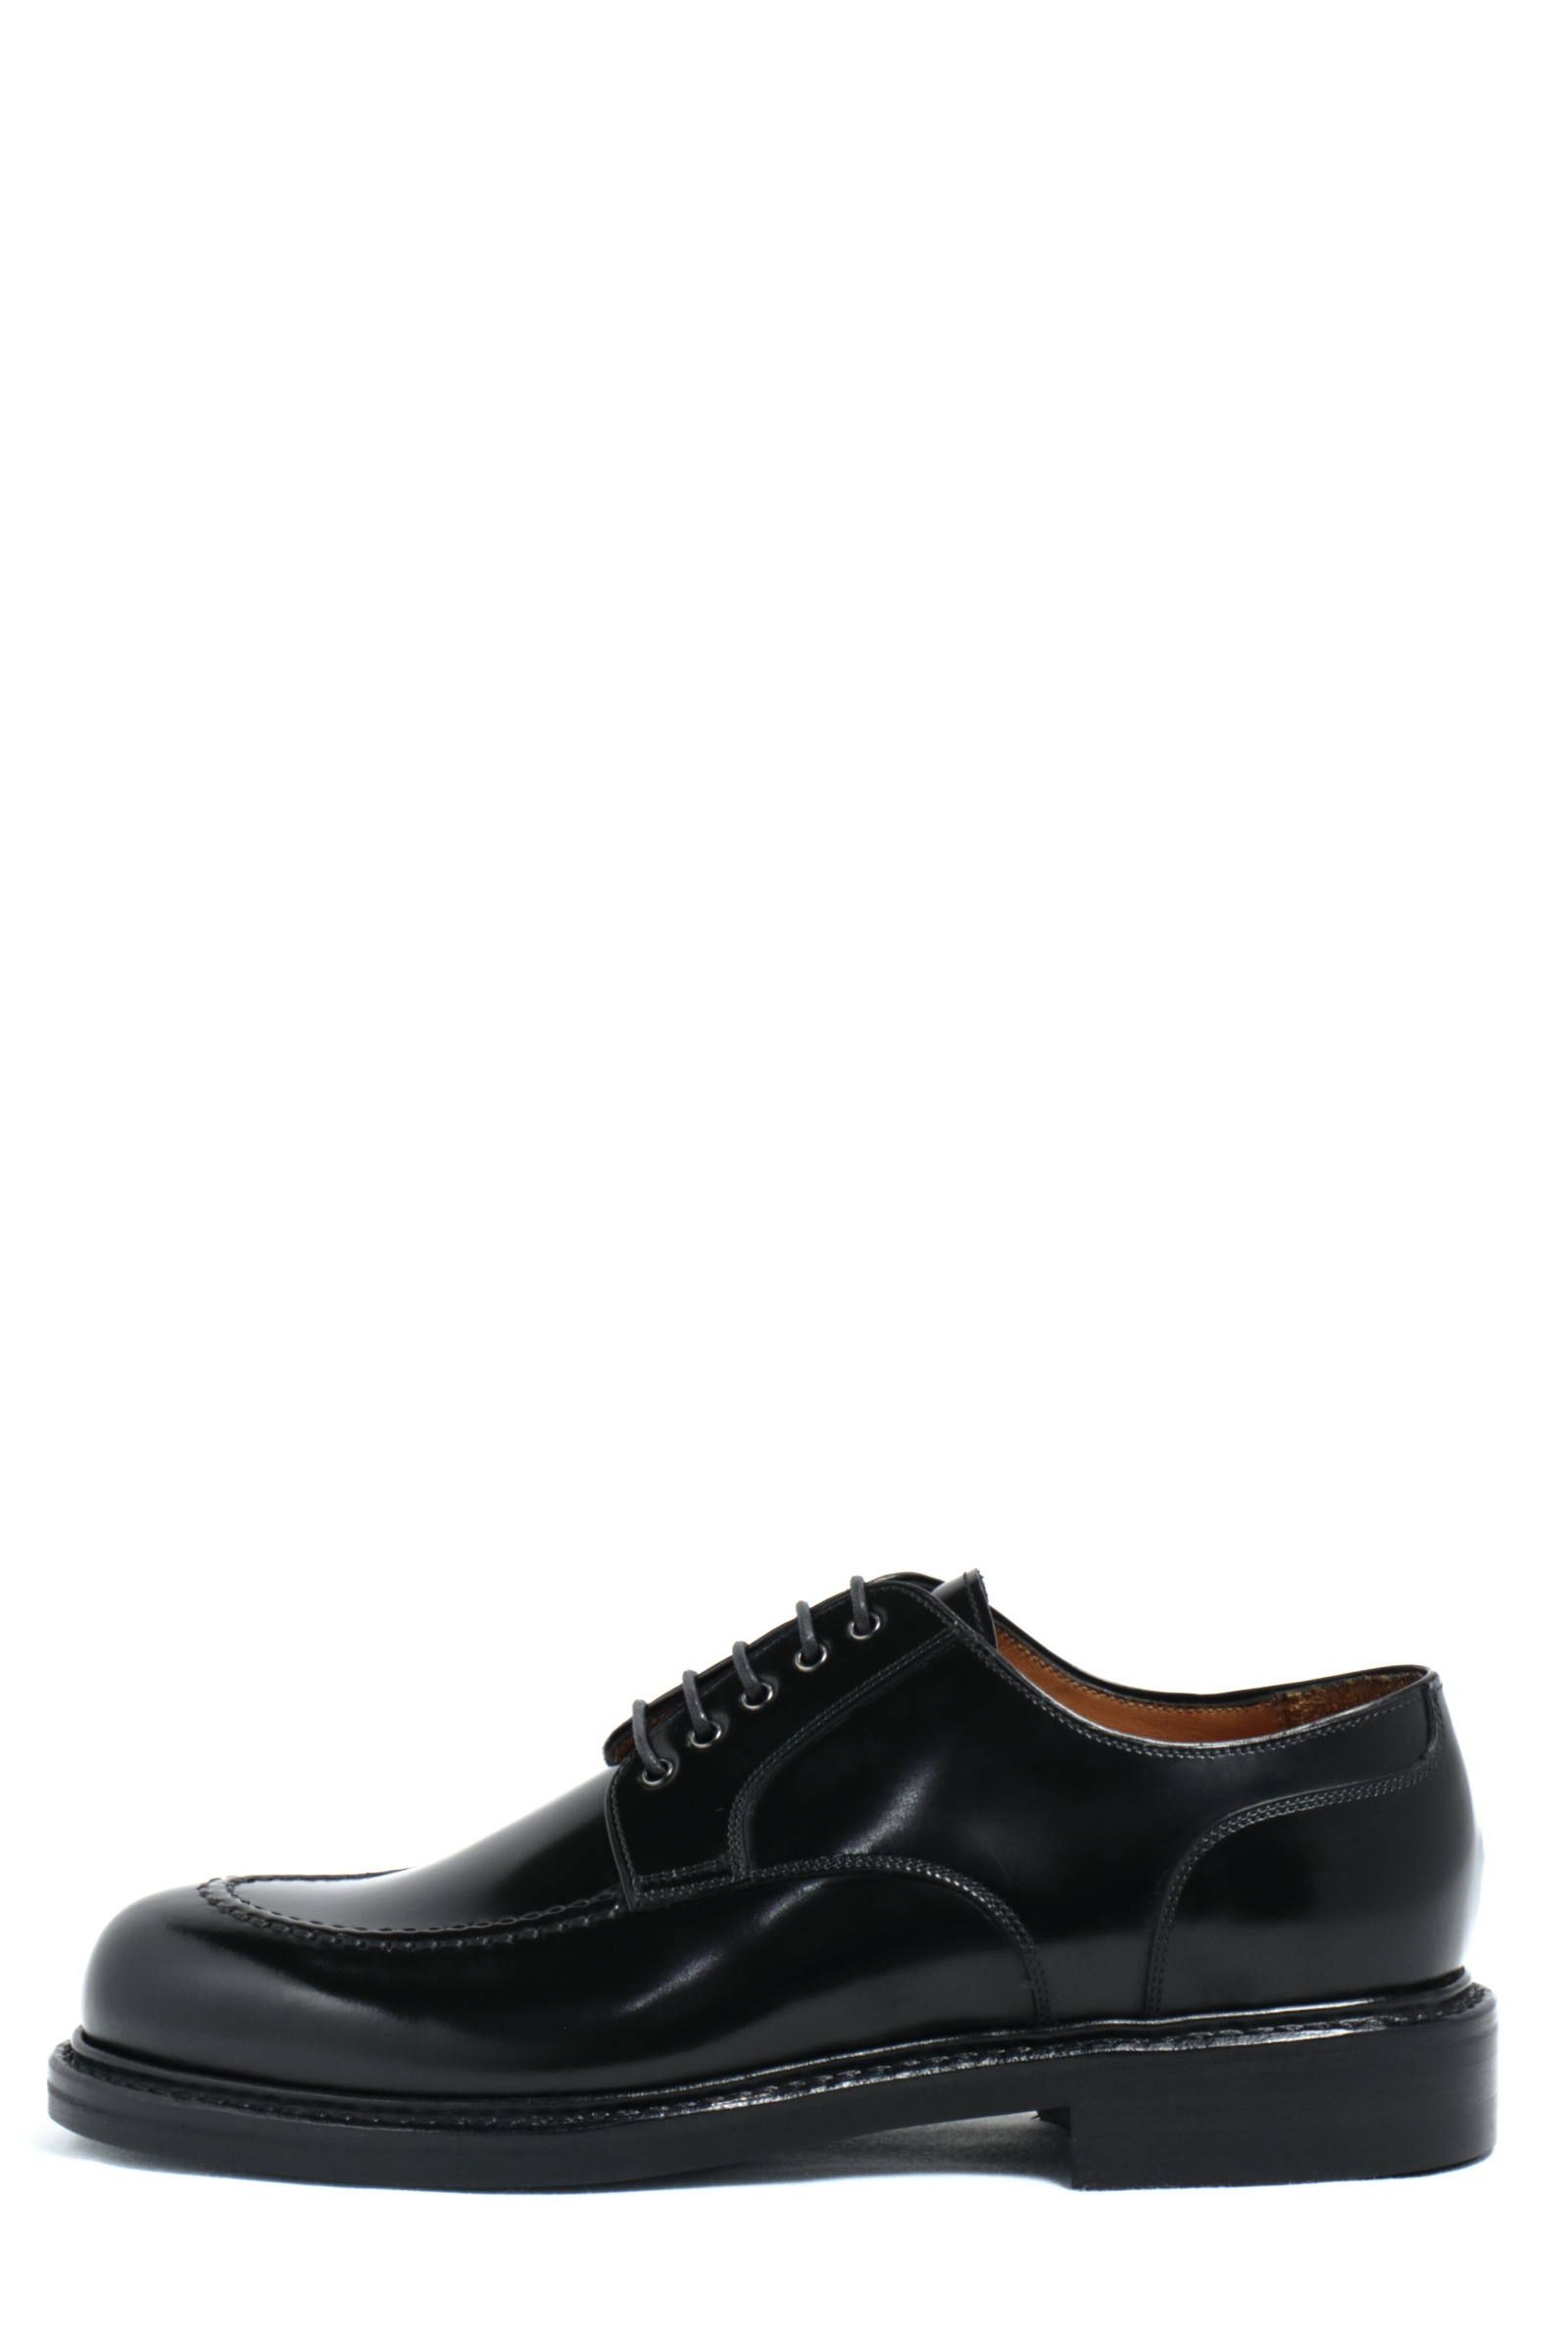 《ラスト1点》 ハイシャイン ダイナイトソール 外羽根 Uチップ シューズ 革靴 / ブラック BLACK - UK6.5/25.0